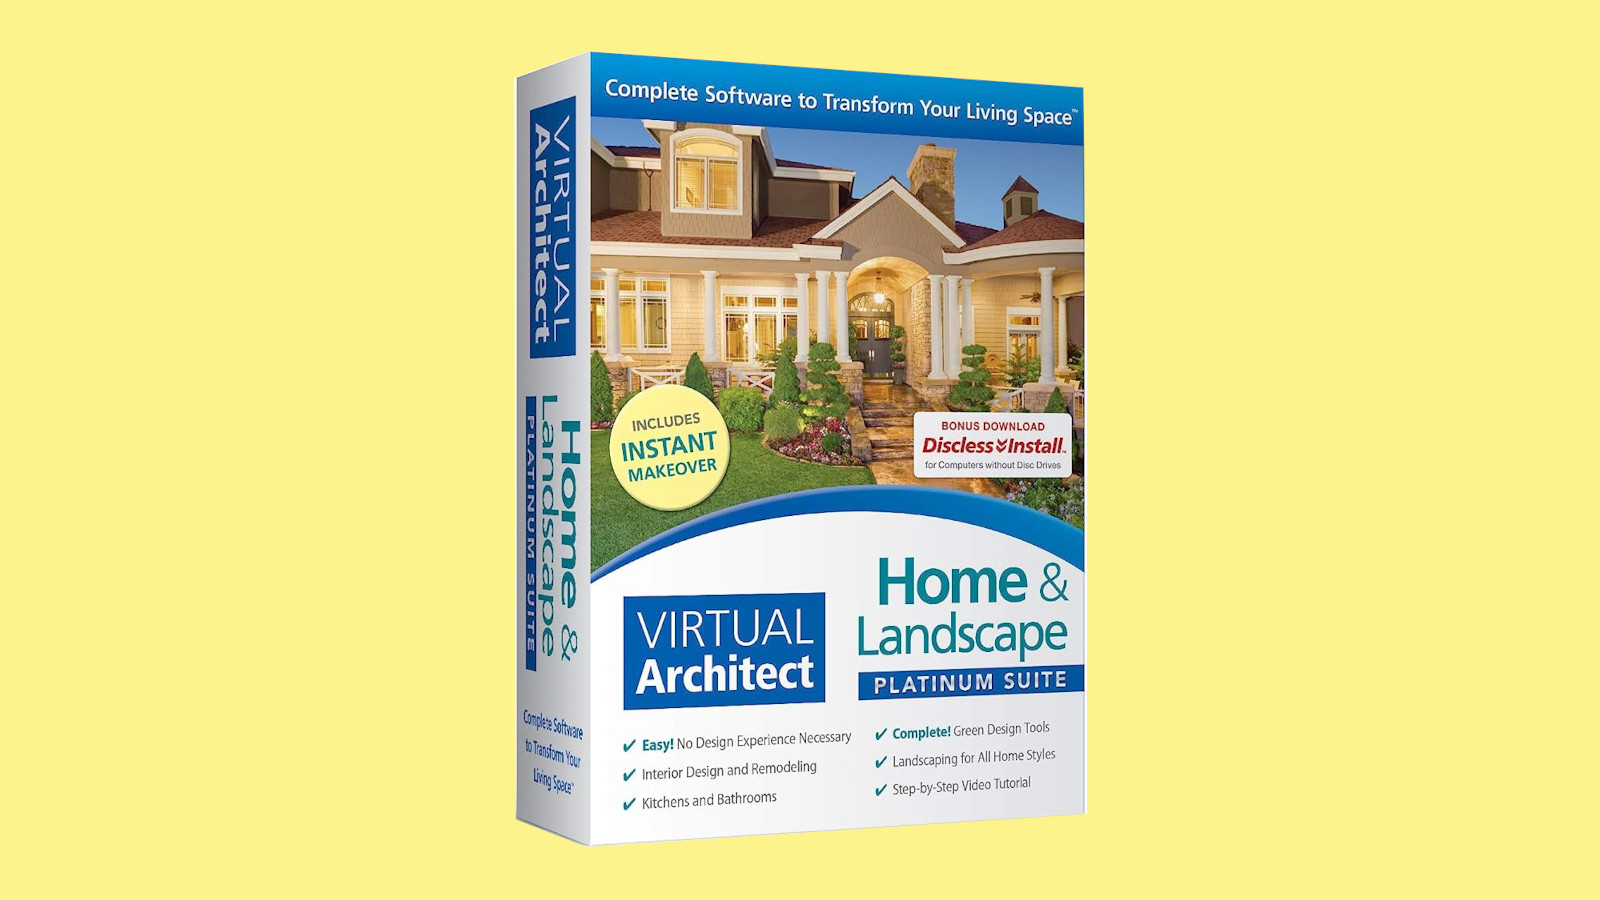 Virtual Architect Home & Landscape Platinum Suite CD Key, 103.45$